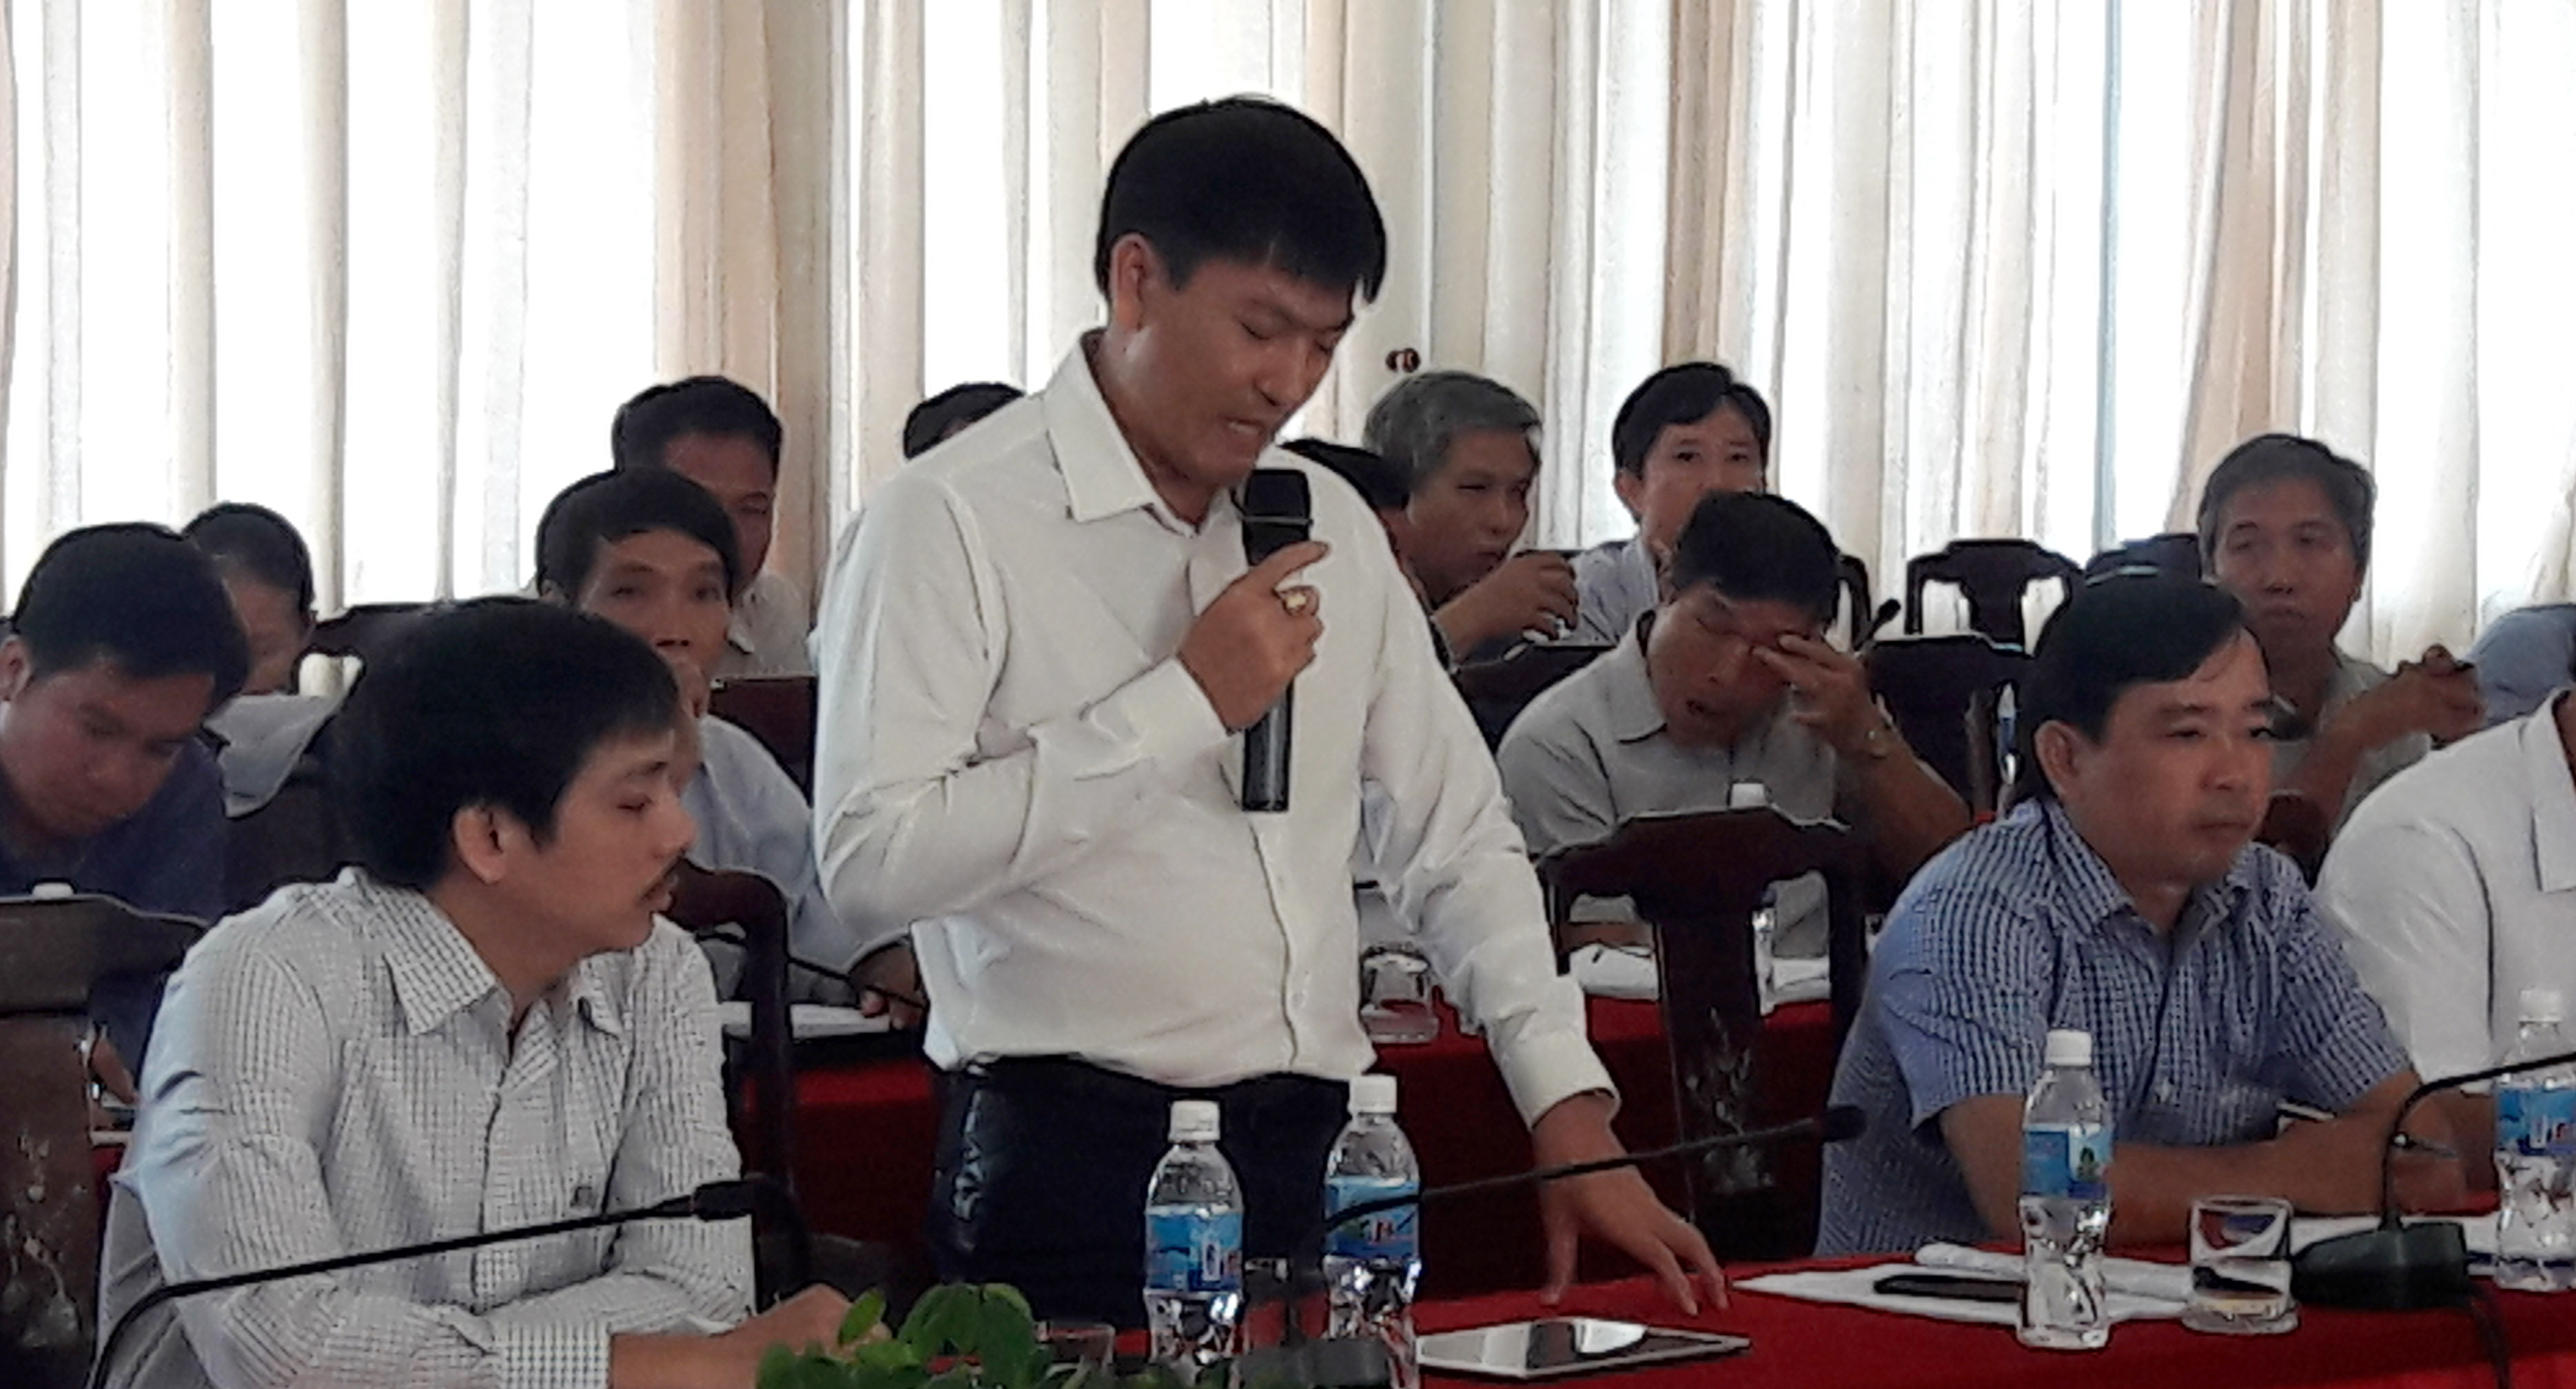 Ông Nguyễn Hoàng Anh, Chủ tịch Hiệp hội tôm tỉnh Bình Thuận nêu hàng loạt bất cập trong quản lý chất lượng tôm giống